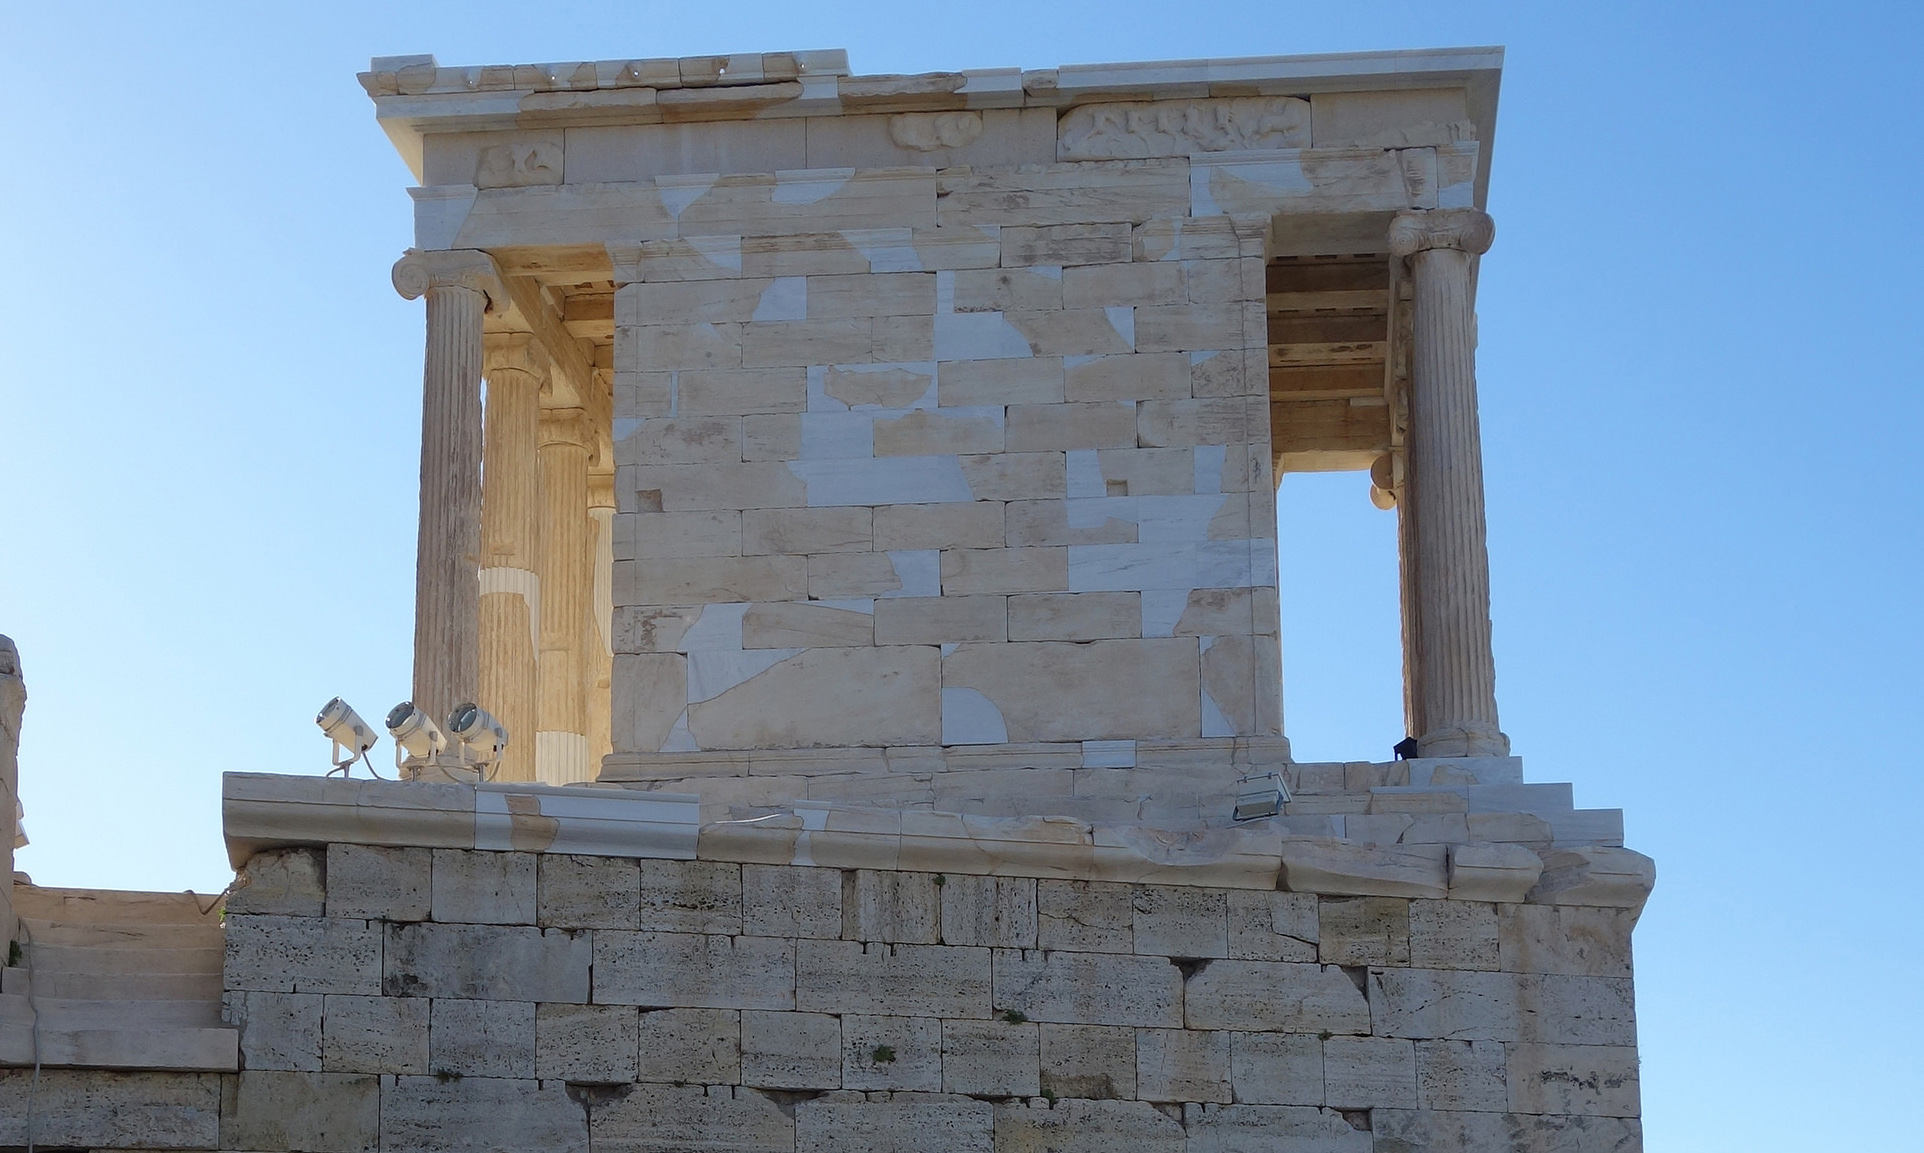 Temple of Athena Nike on the Athenian Acropolis